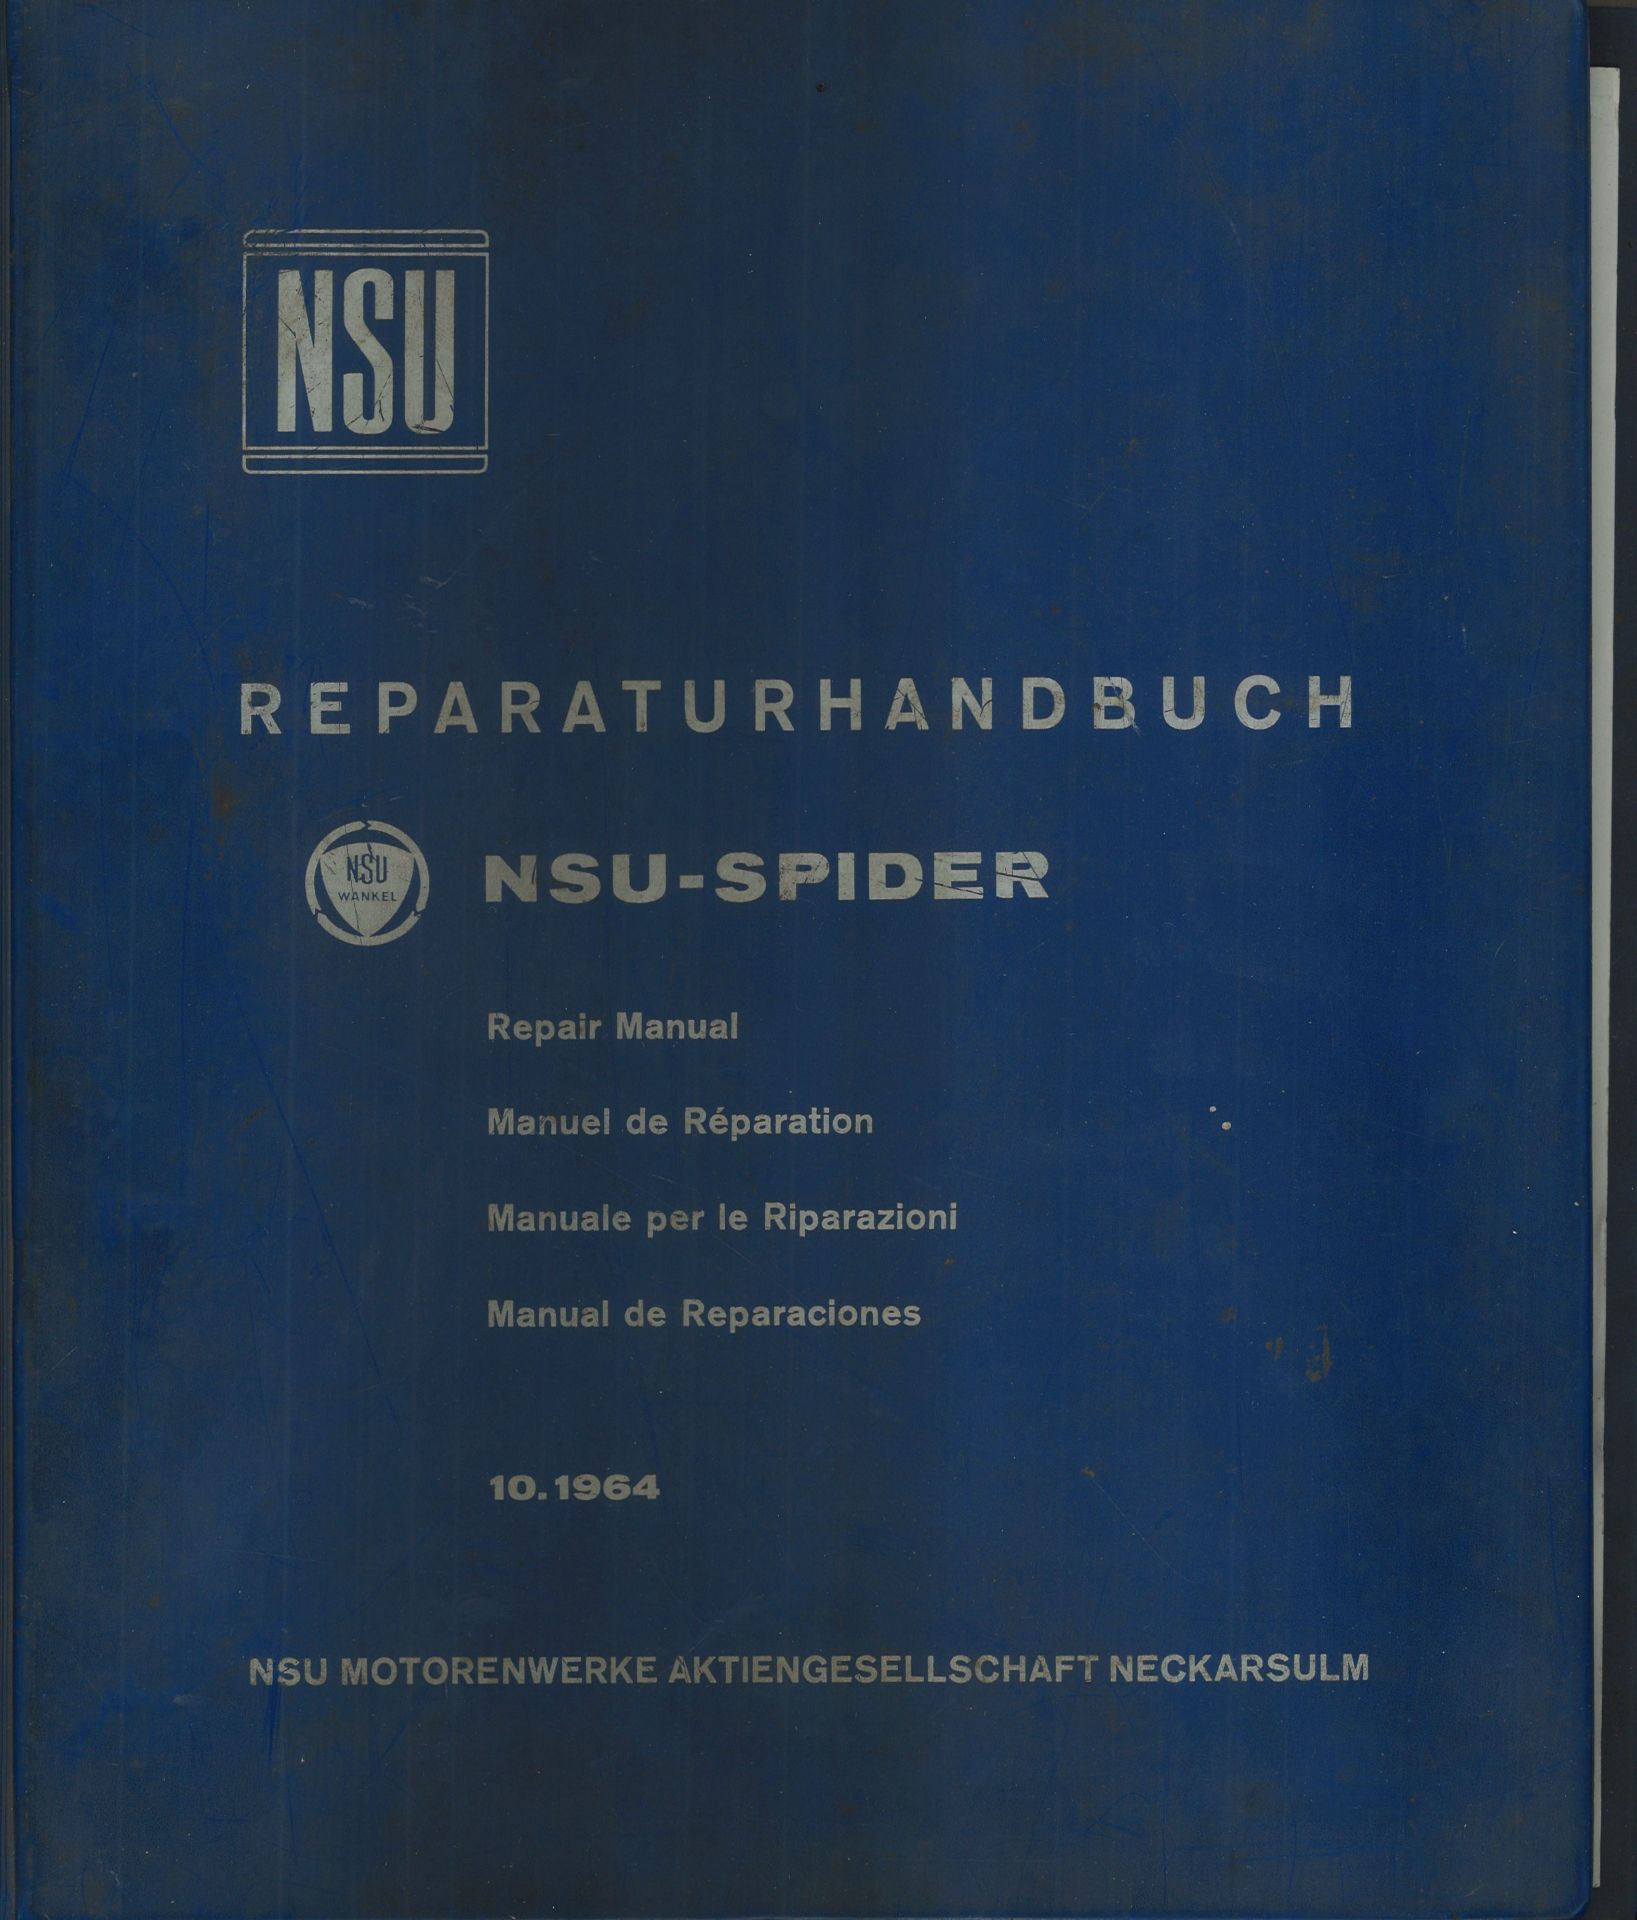 Aus Oldtimer Sammlung! NSU Reparaturenhandbuch "NSU - SPIDER" 10.1964. NSU Motorwerke